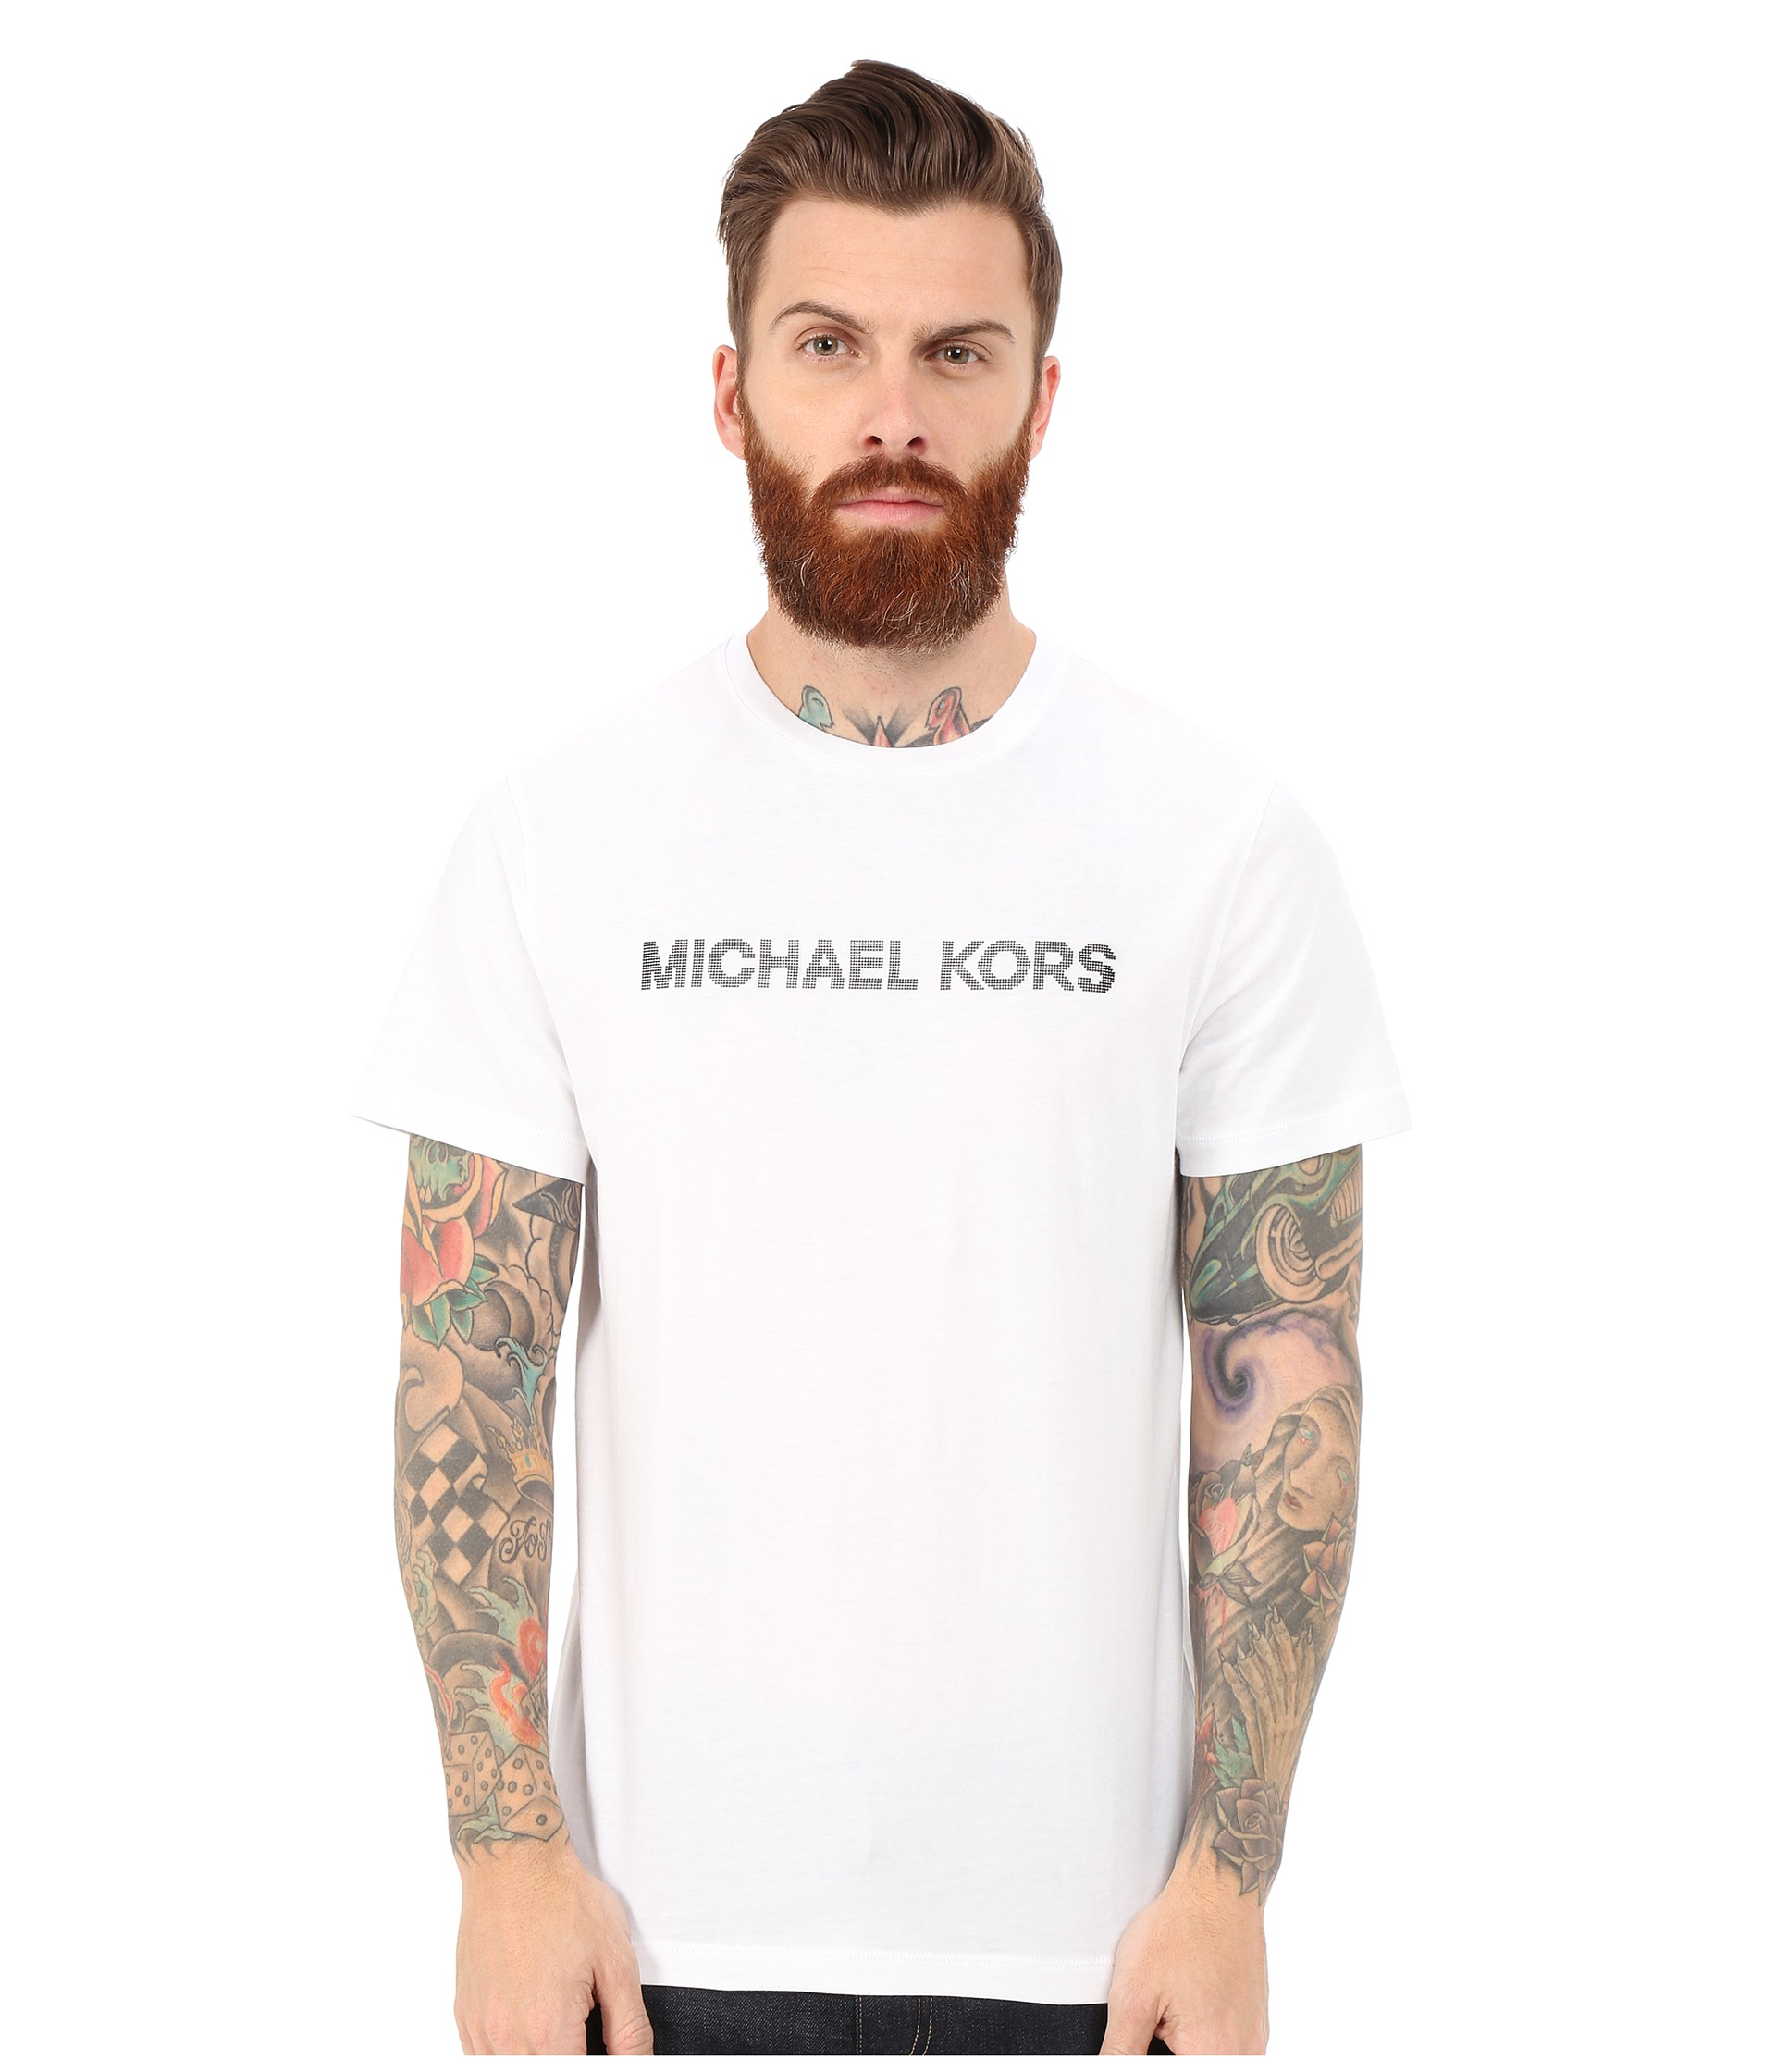 michael kors t shirt mens price